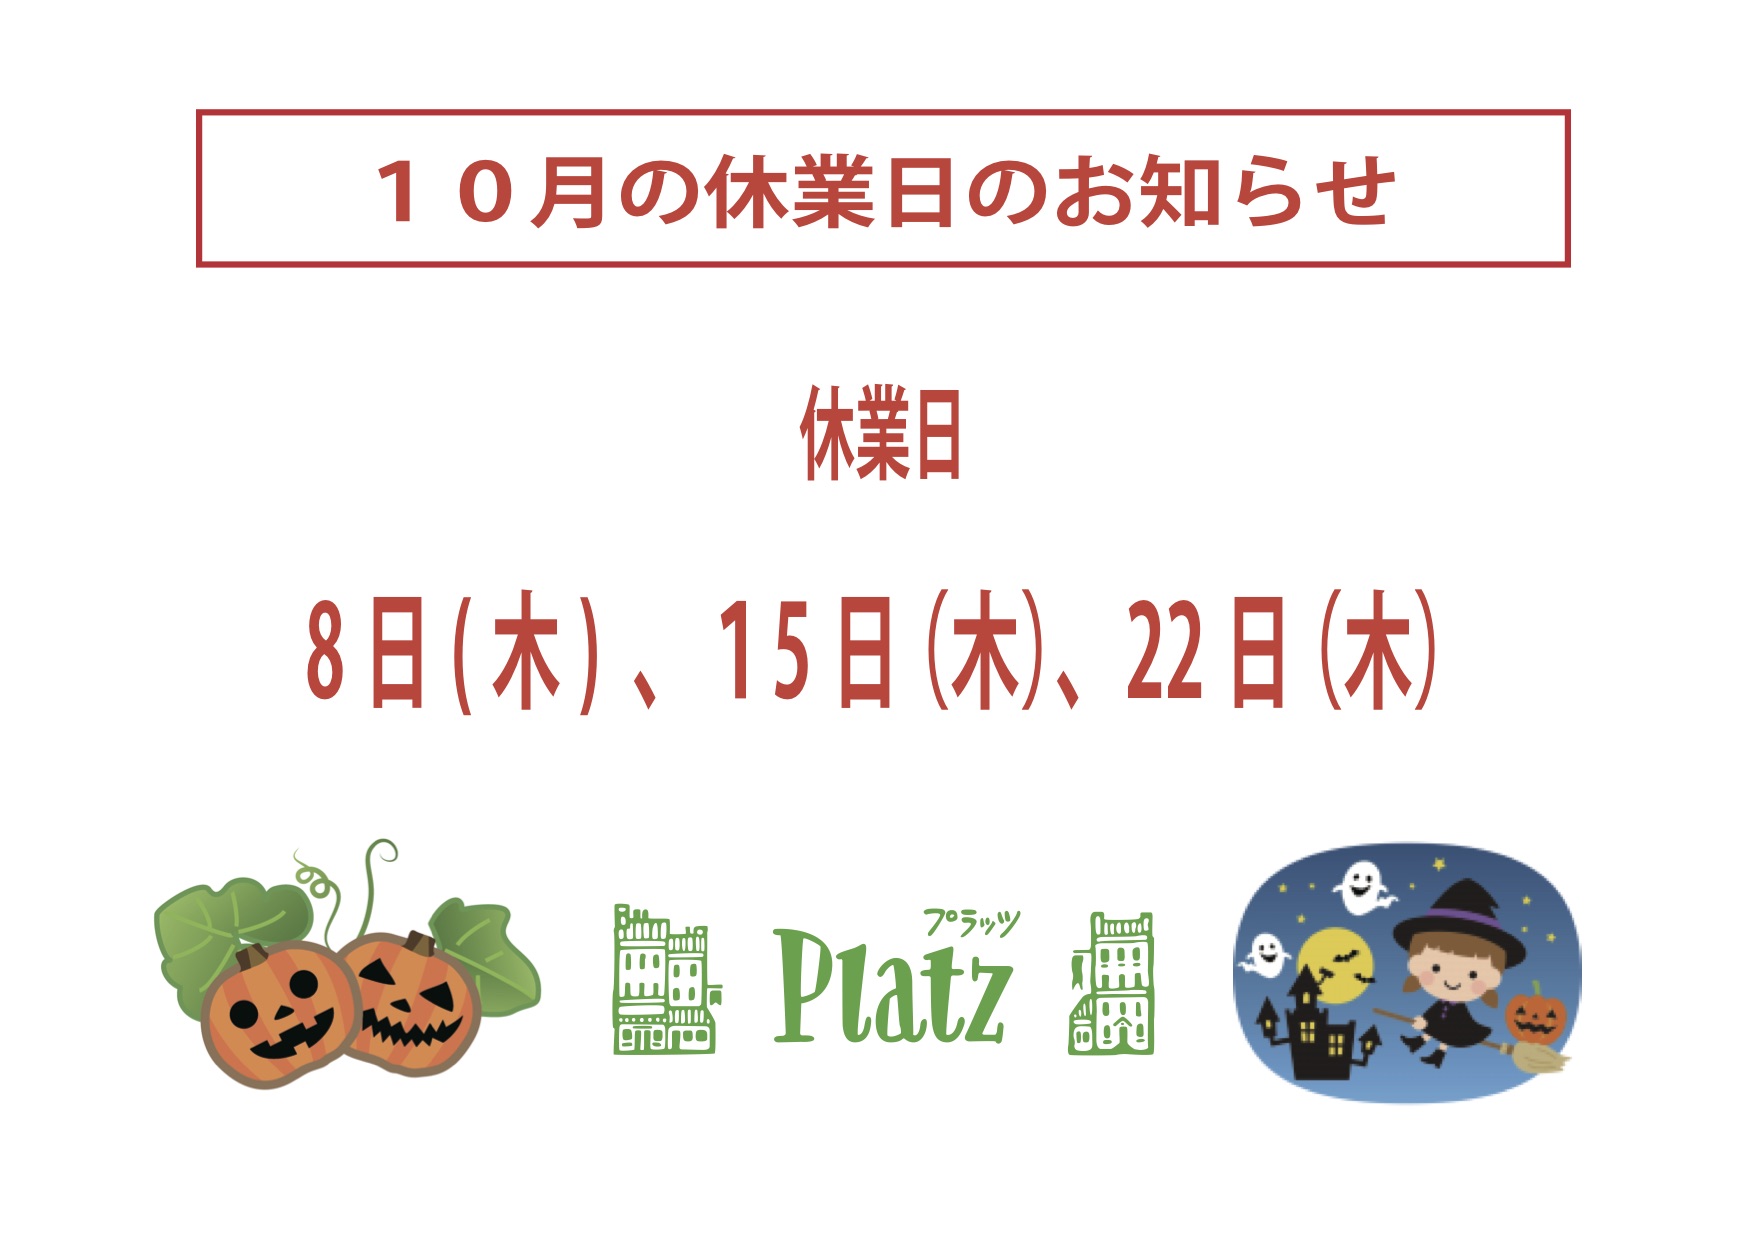 http://www.kyoto-platz.jp/news/images/2020.10%E6%9C%88%E4%BC%91%E6%A5%AD%E6%97%A5.jpg